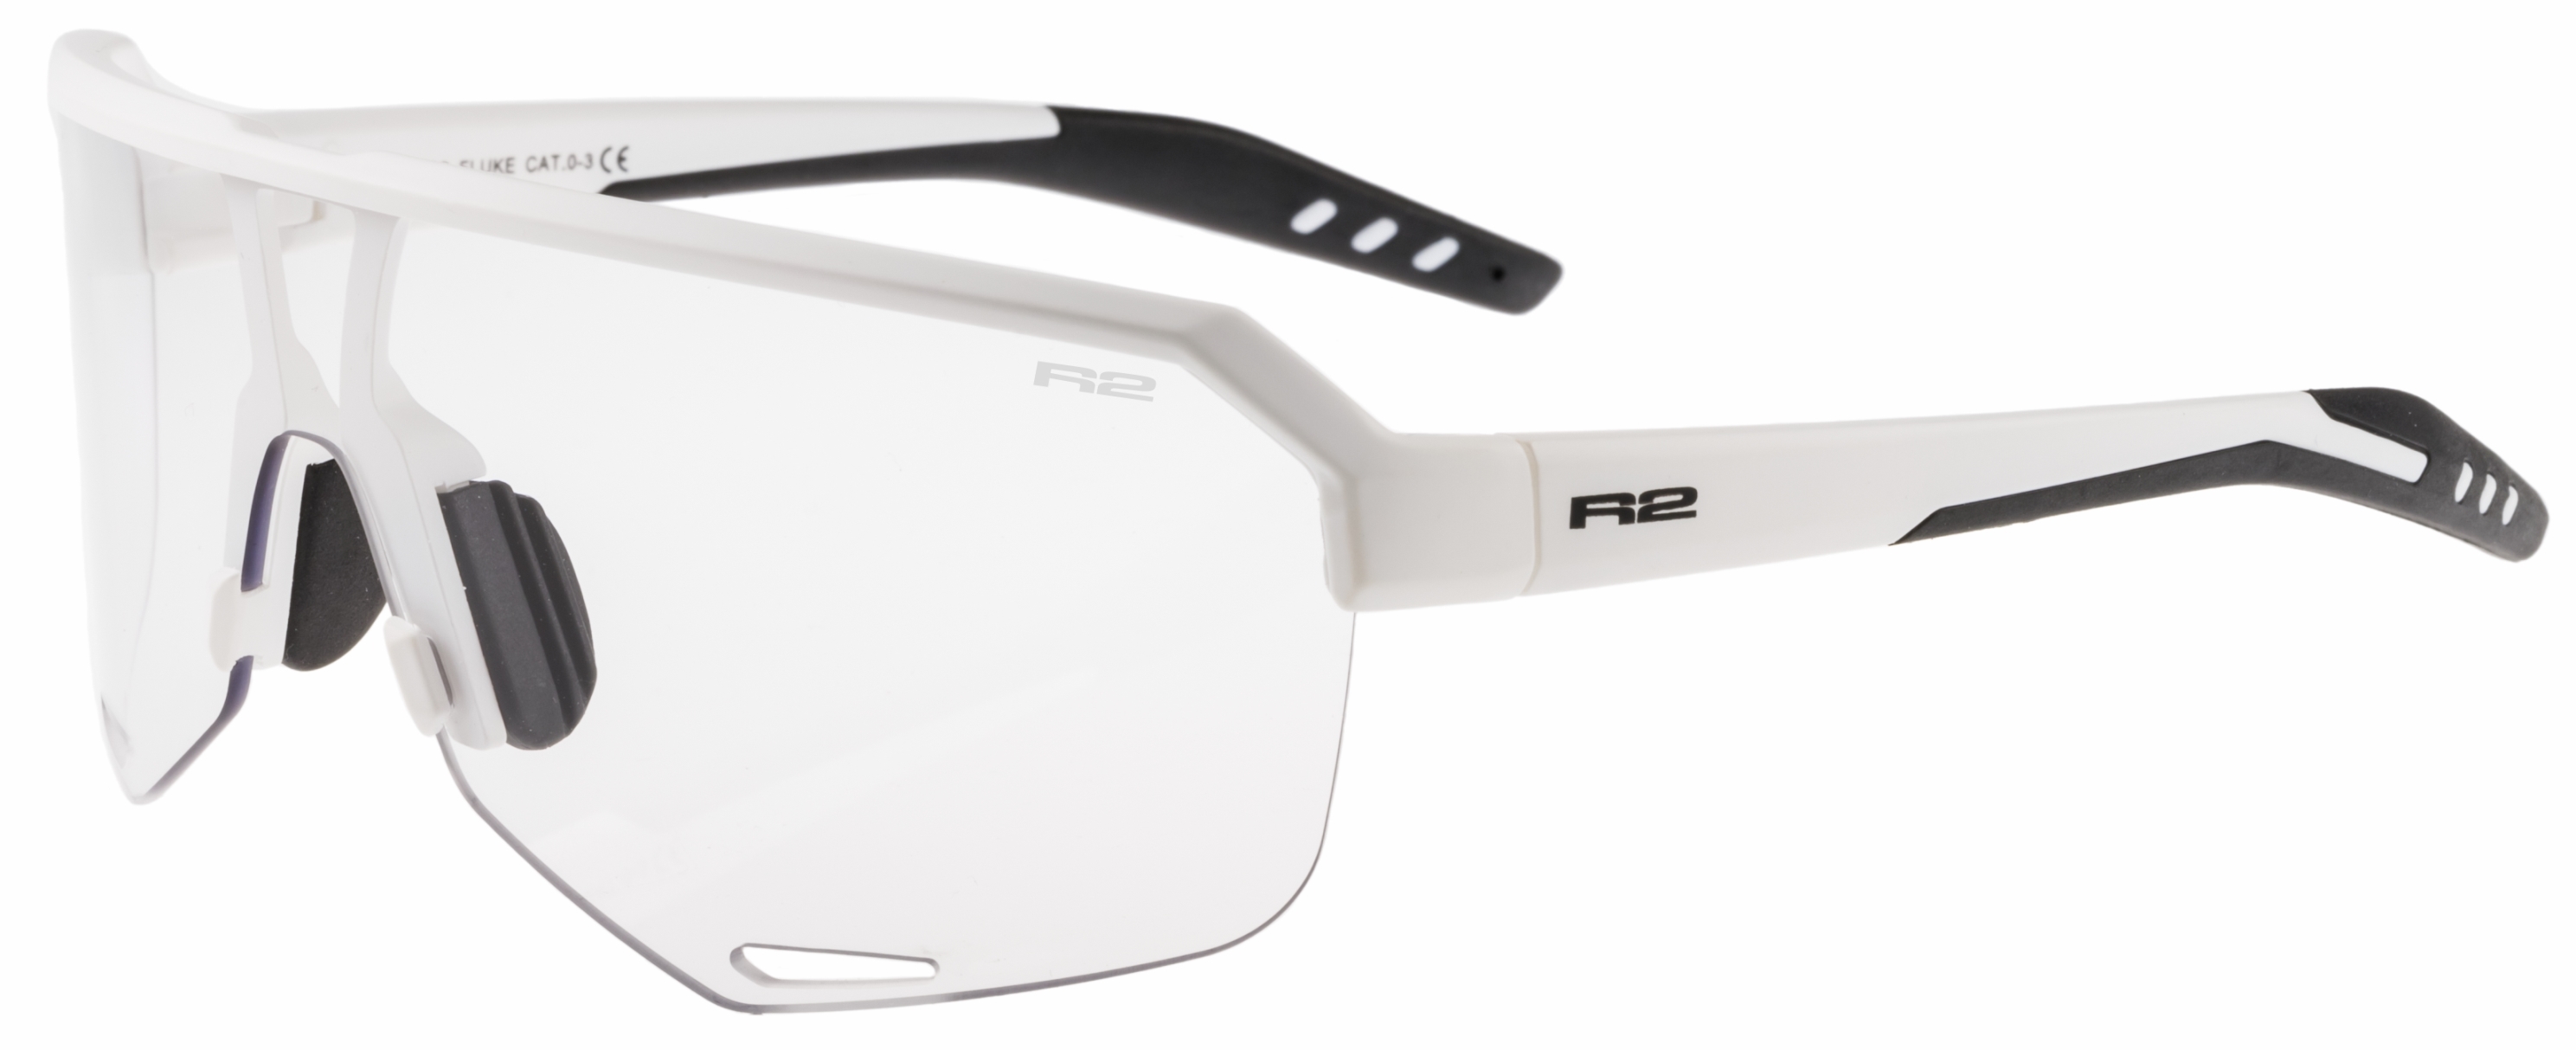 Sportovní sluneční brýle R2 Fluke AT100S